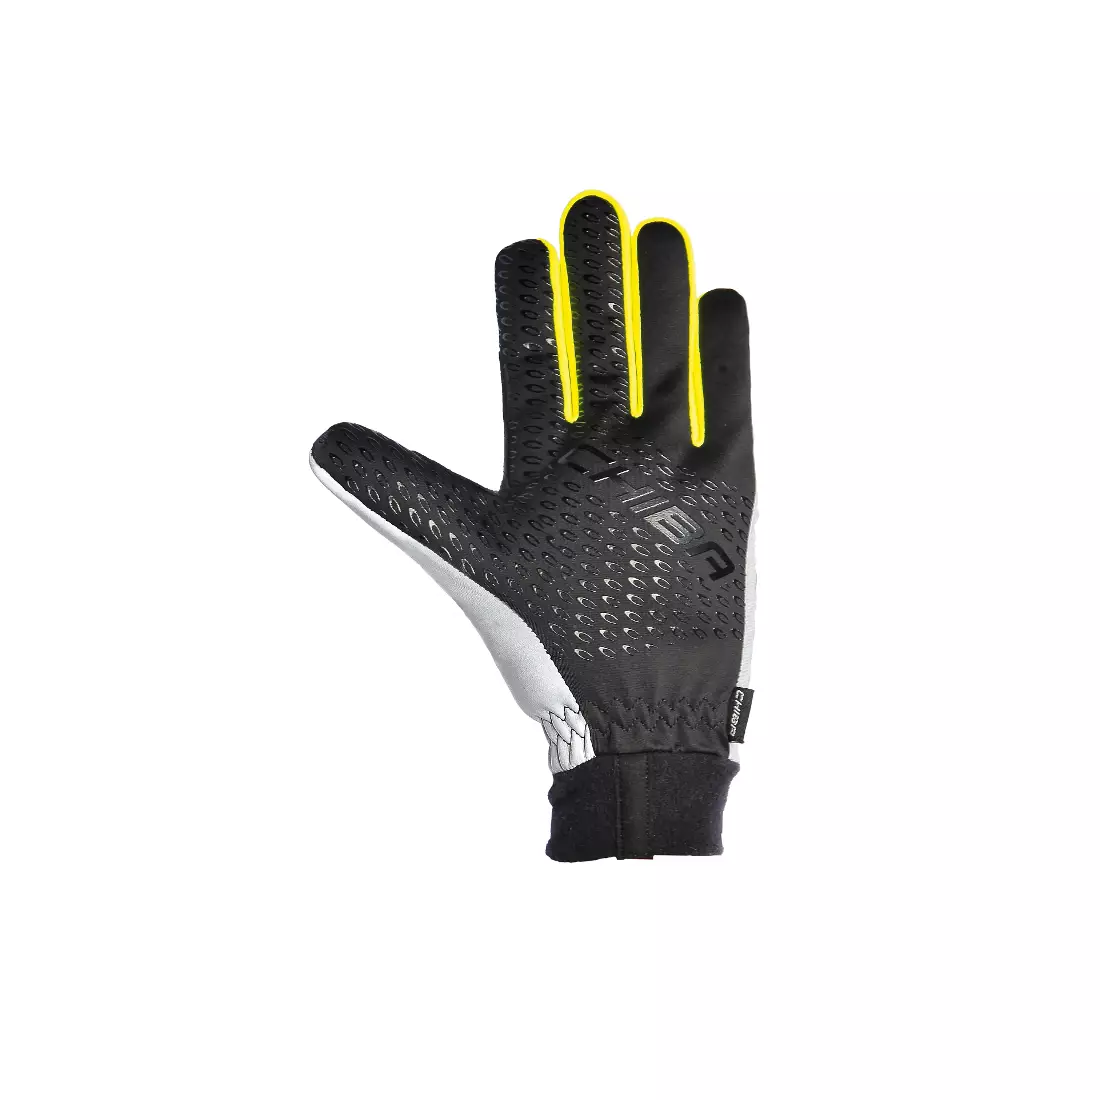 CHIBA PRO SAFETY isolierte Handschuhe, reflektierend 31515